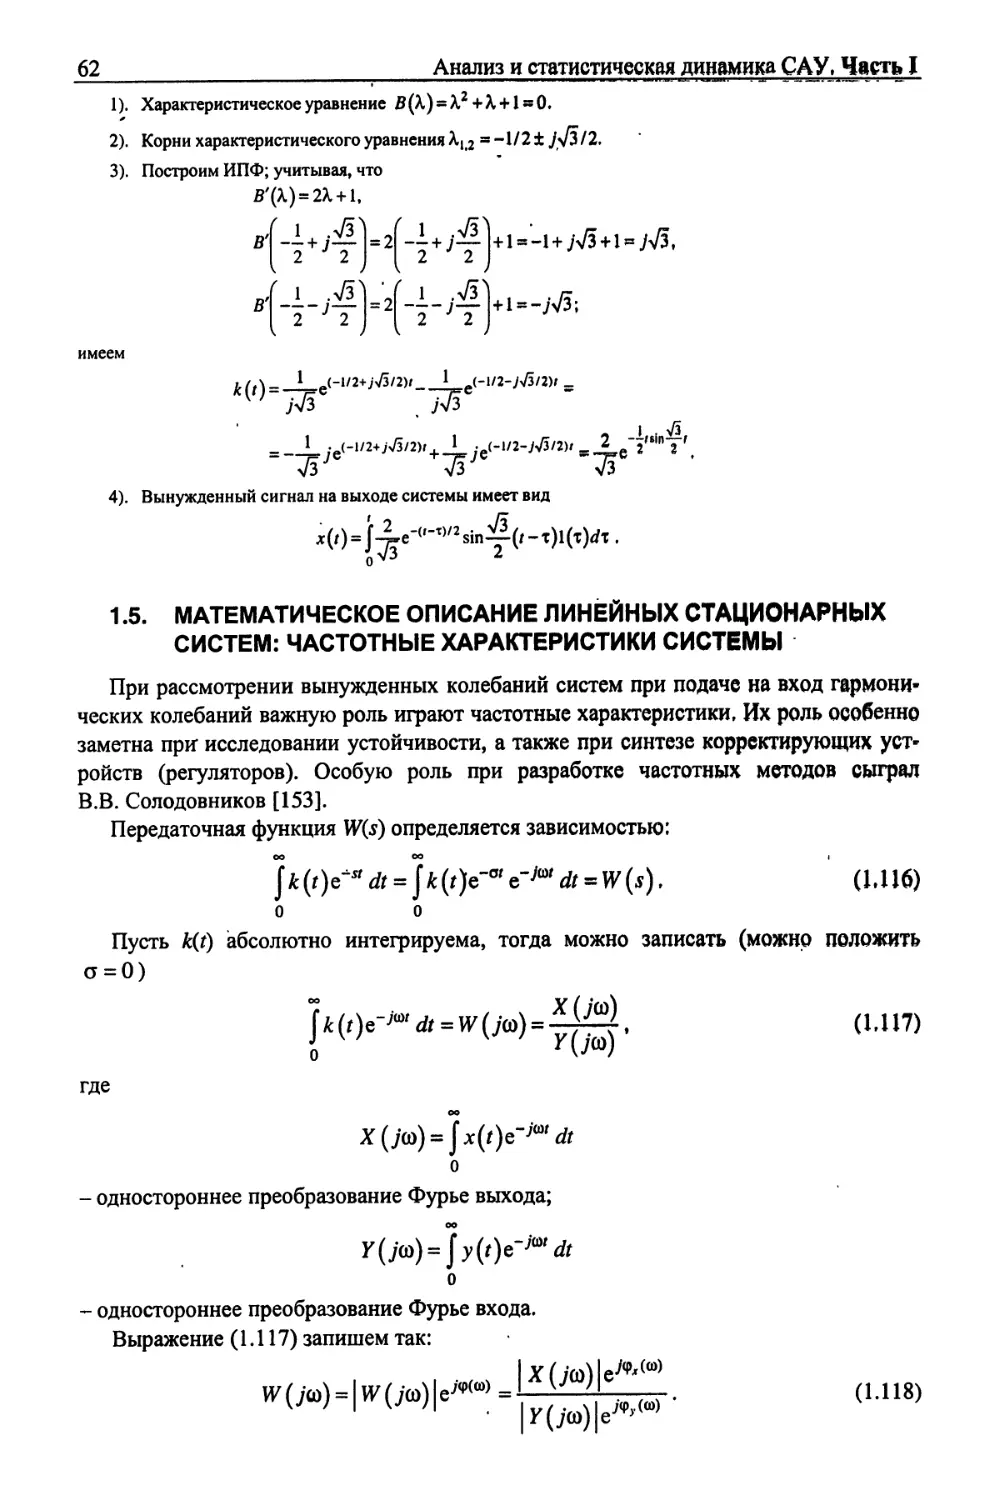 1.5. Математическое описание линейных стационарных систем: частотные характеристики системы